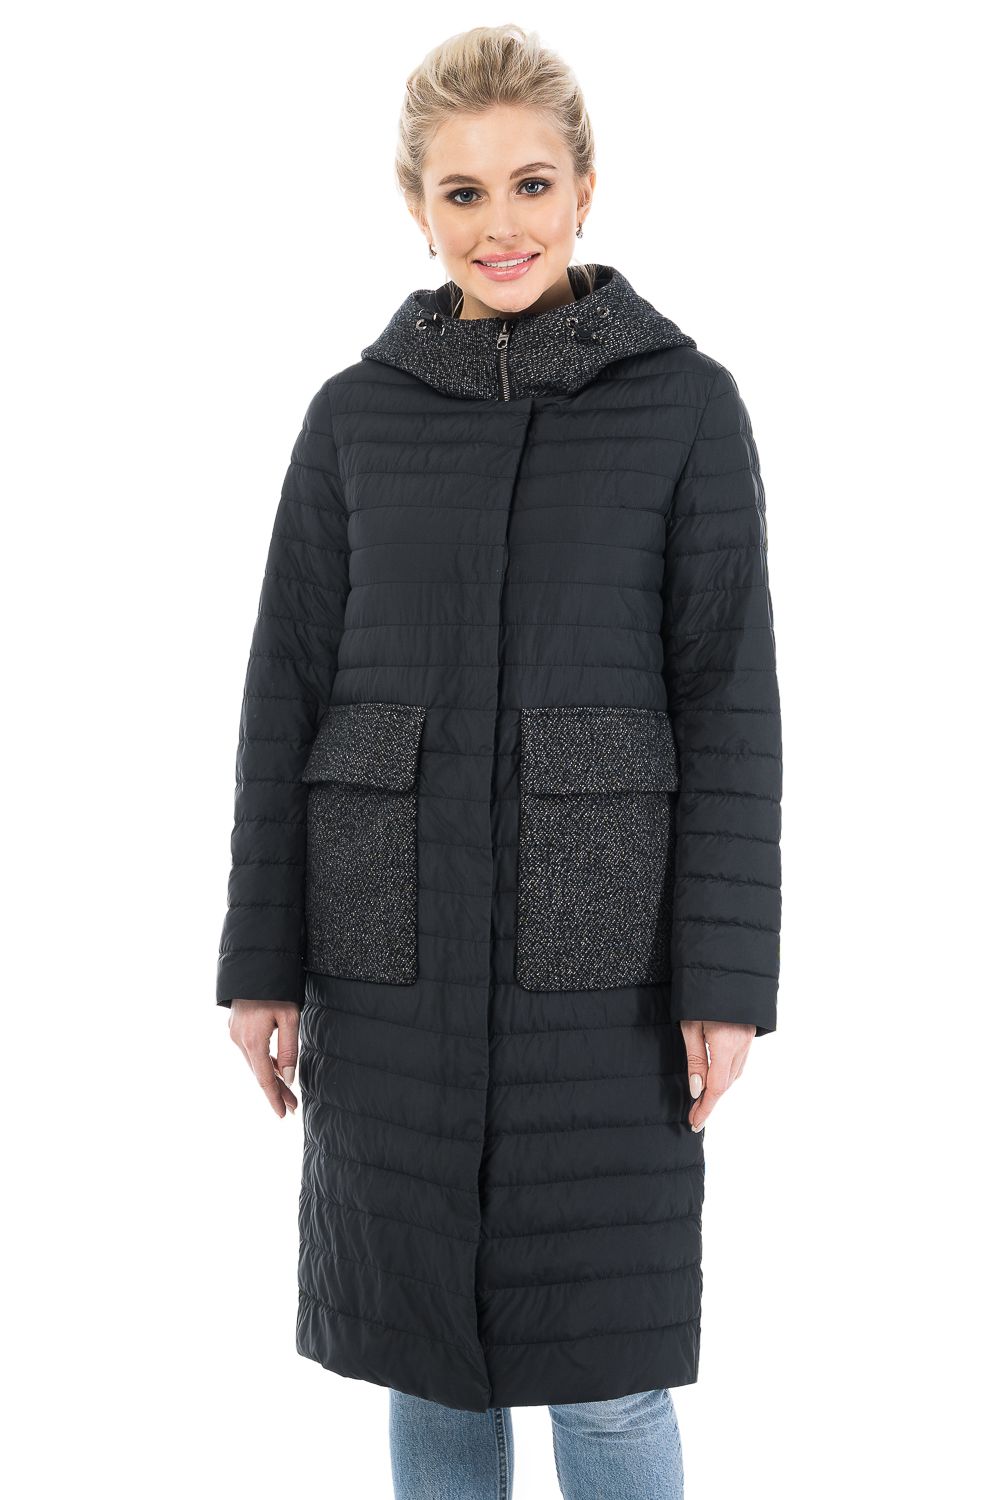 Пальто женское OHARA CC-20701 черное 44 RU